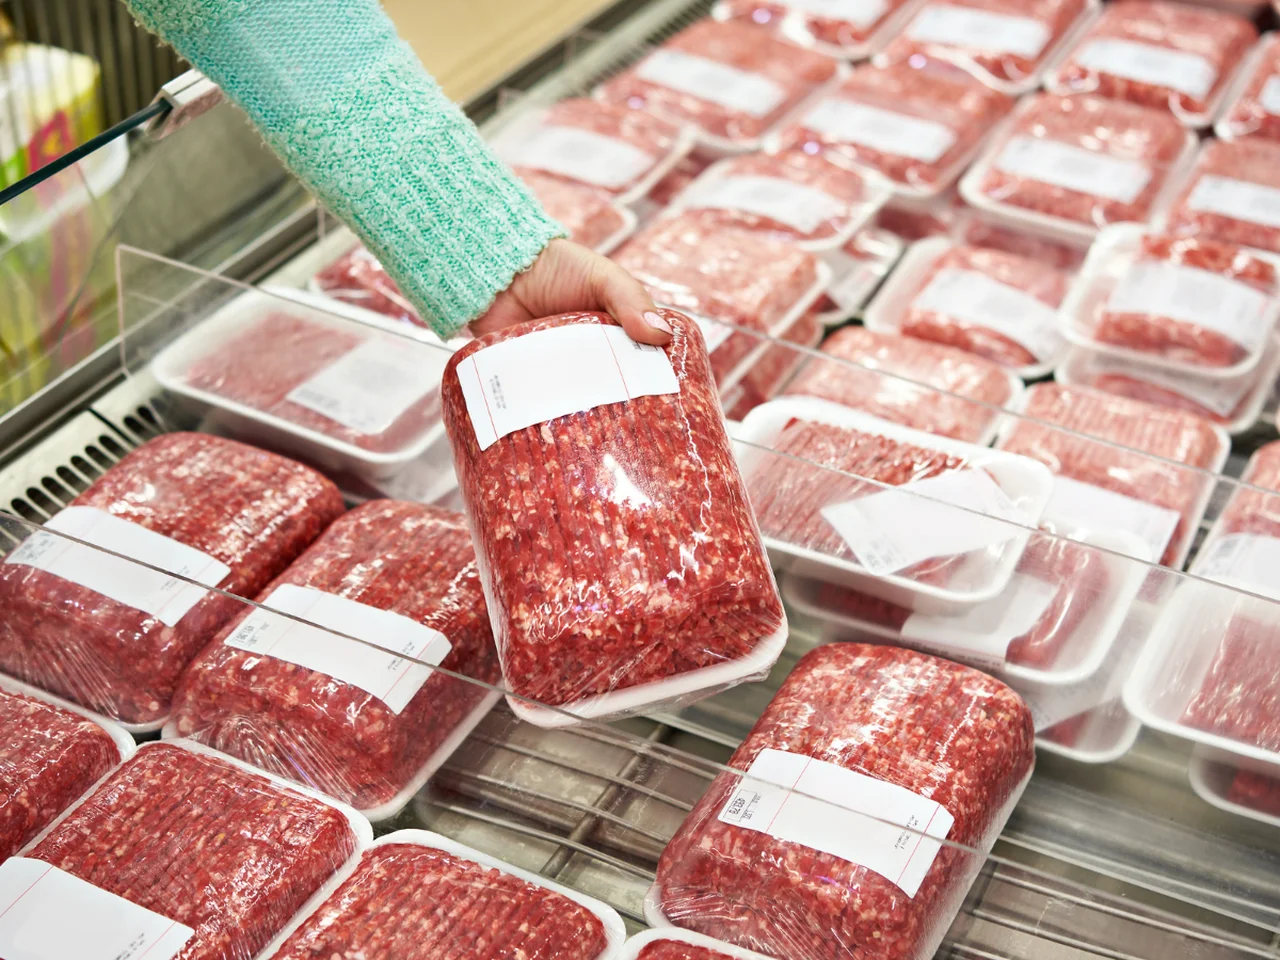 Czy ceny mięsa pójdą ostro w górę?